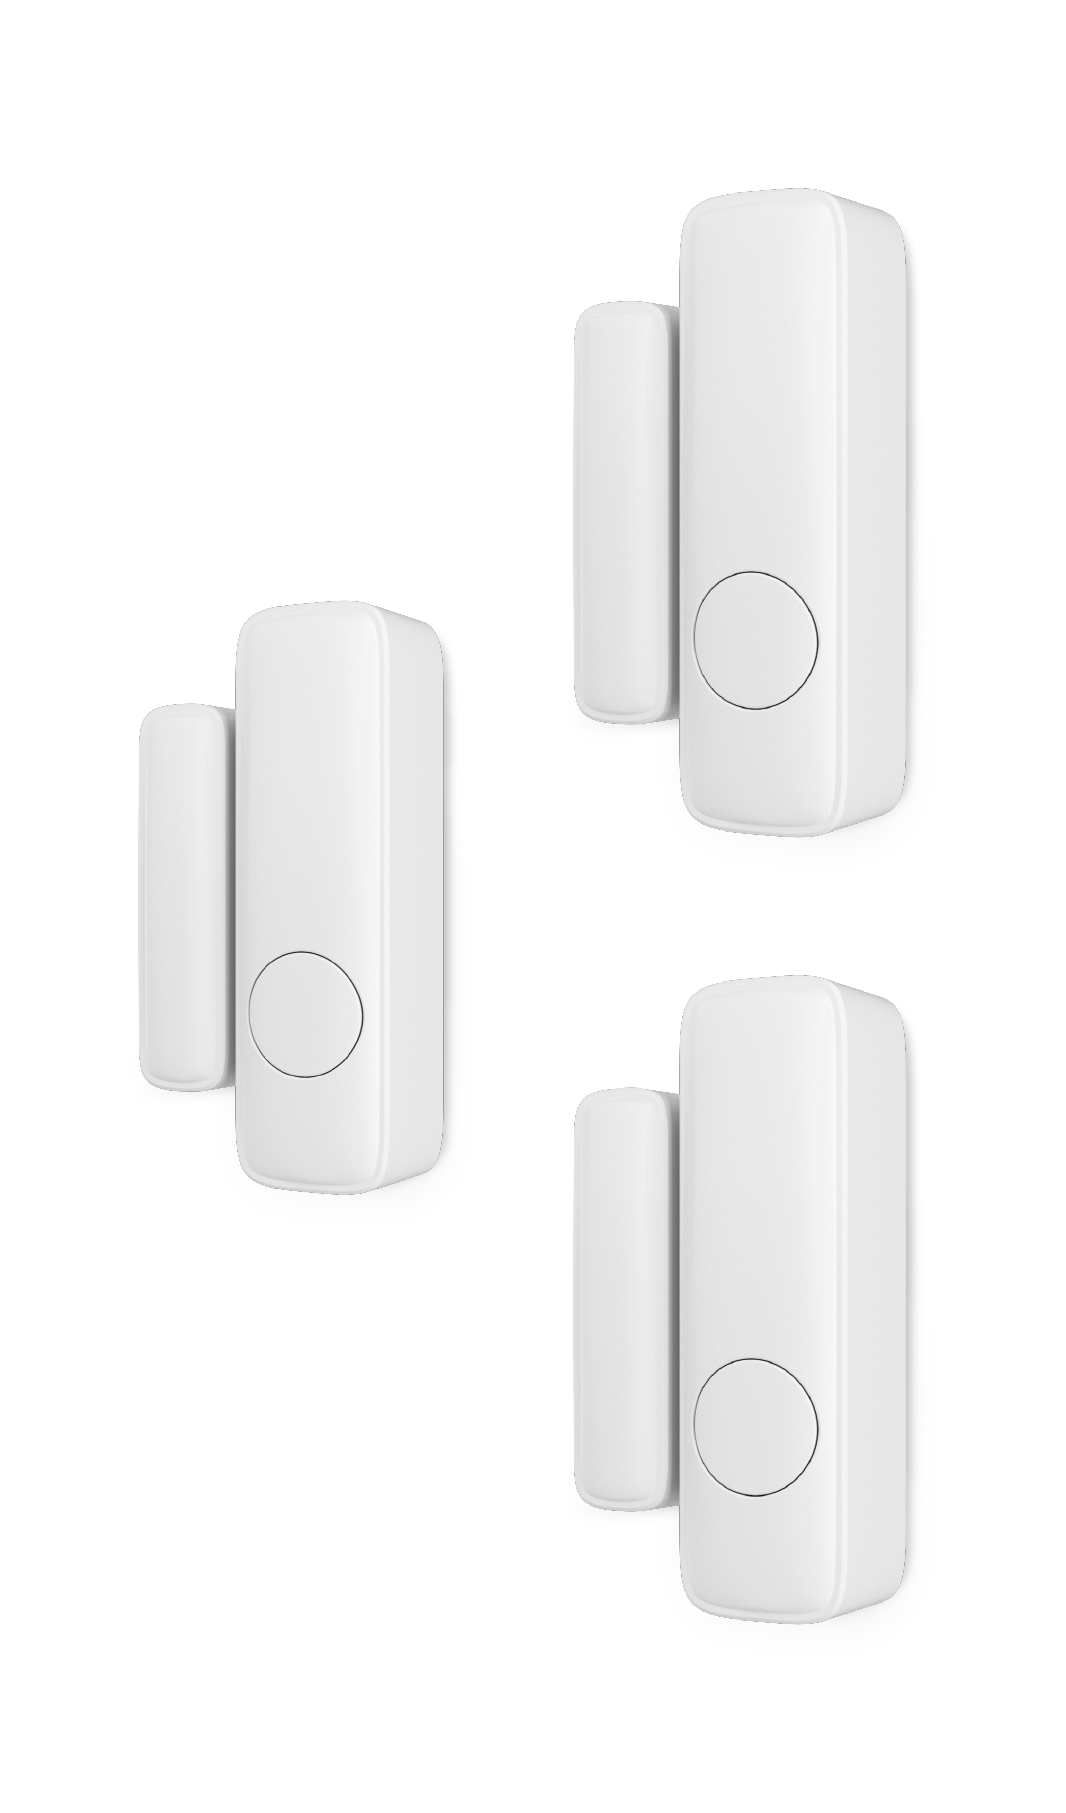 Kit de 3 sensores de apertura para puerta o ventana lexman enki con vibración